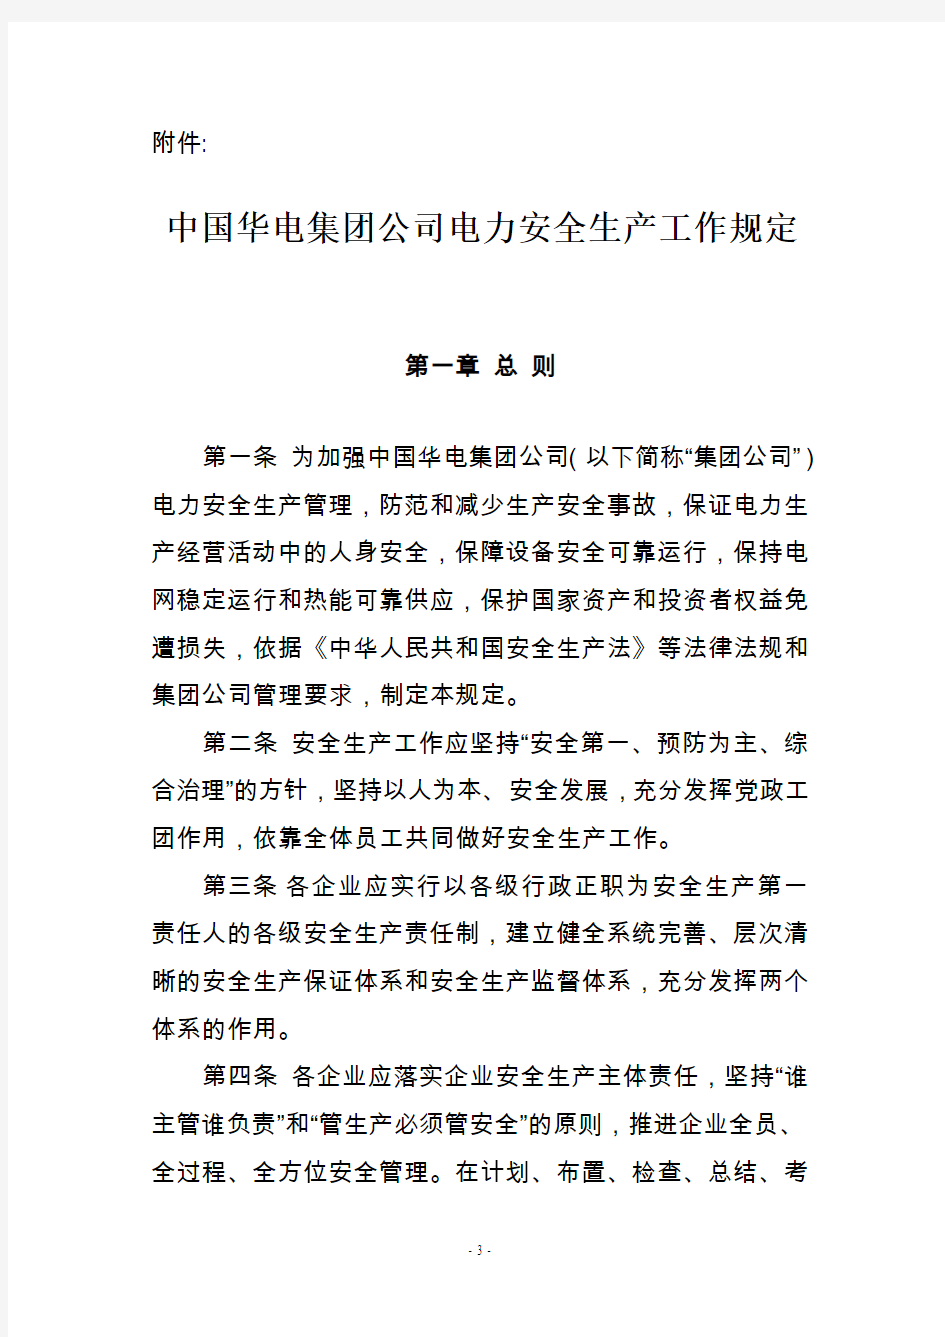 中国华电集团公司电力安全生产工作规定